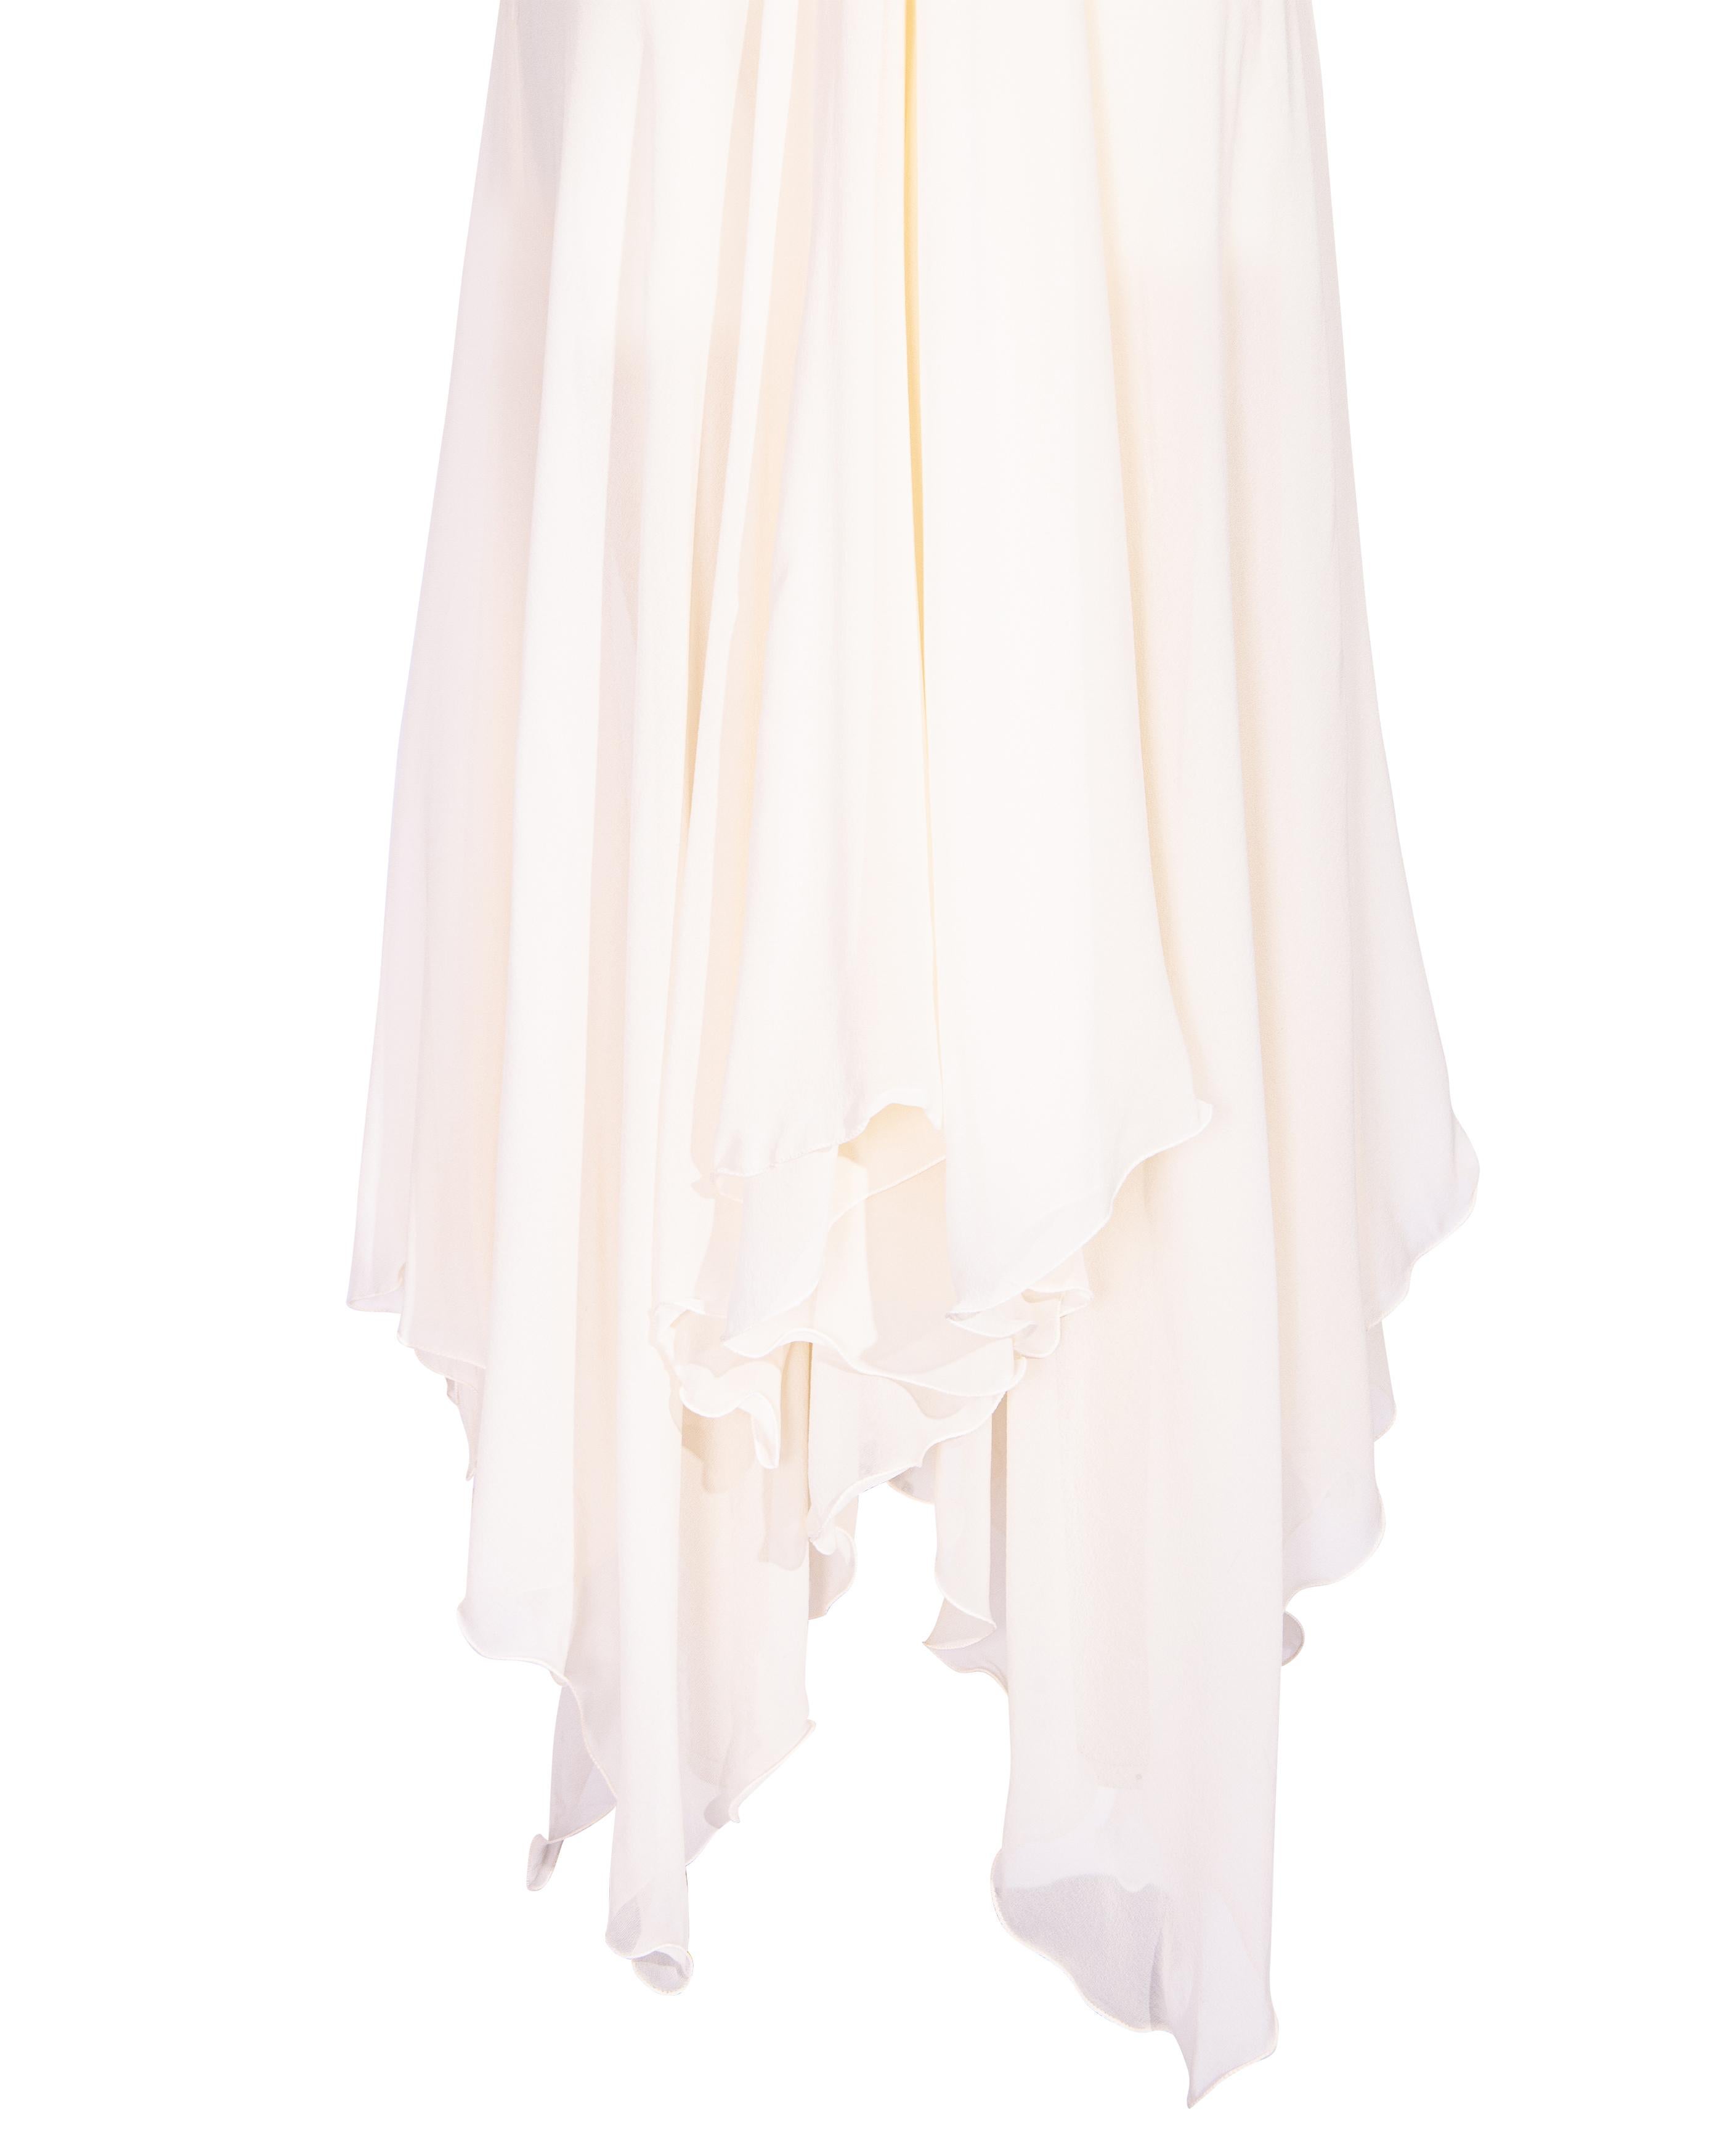 F/S 1995 Gianni Versace Couture Seiden-Chiffon-Kleid mit drapierter Vorderseite aus Seide 8